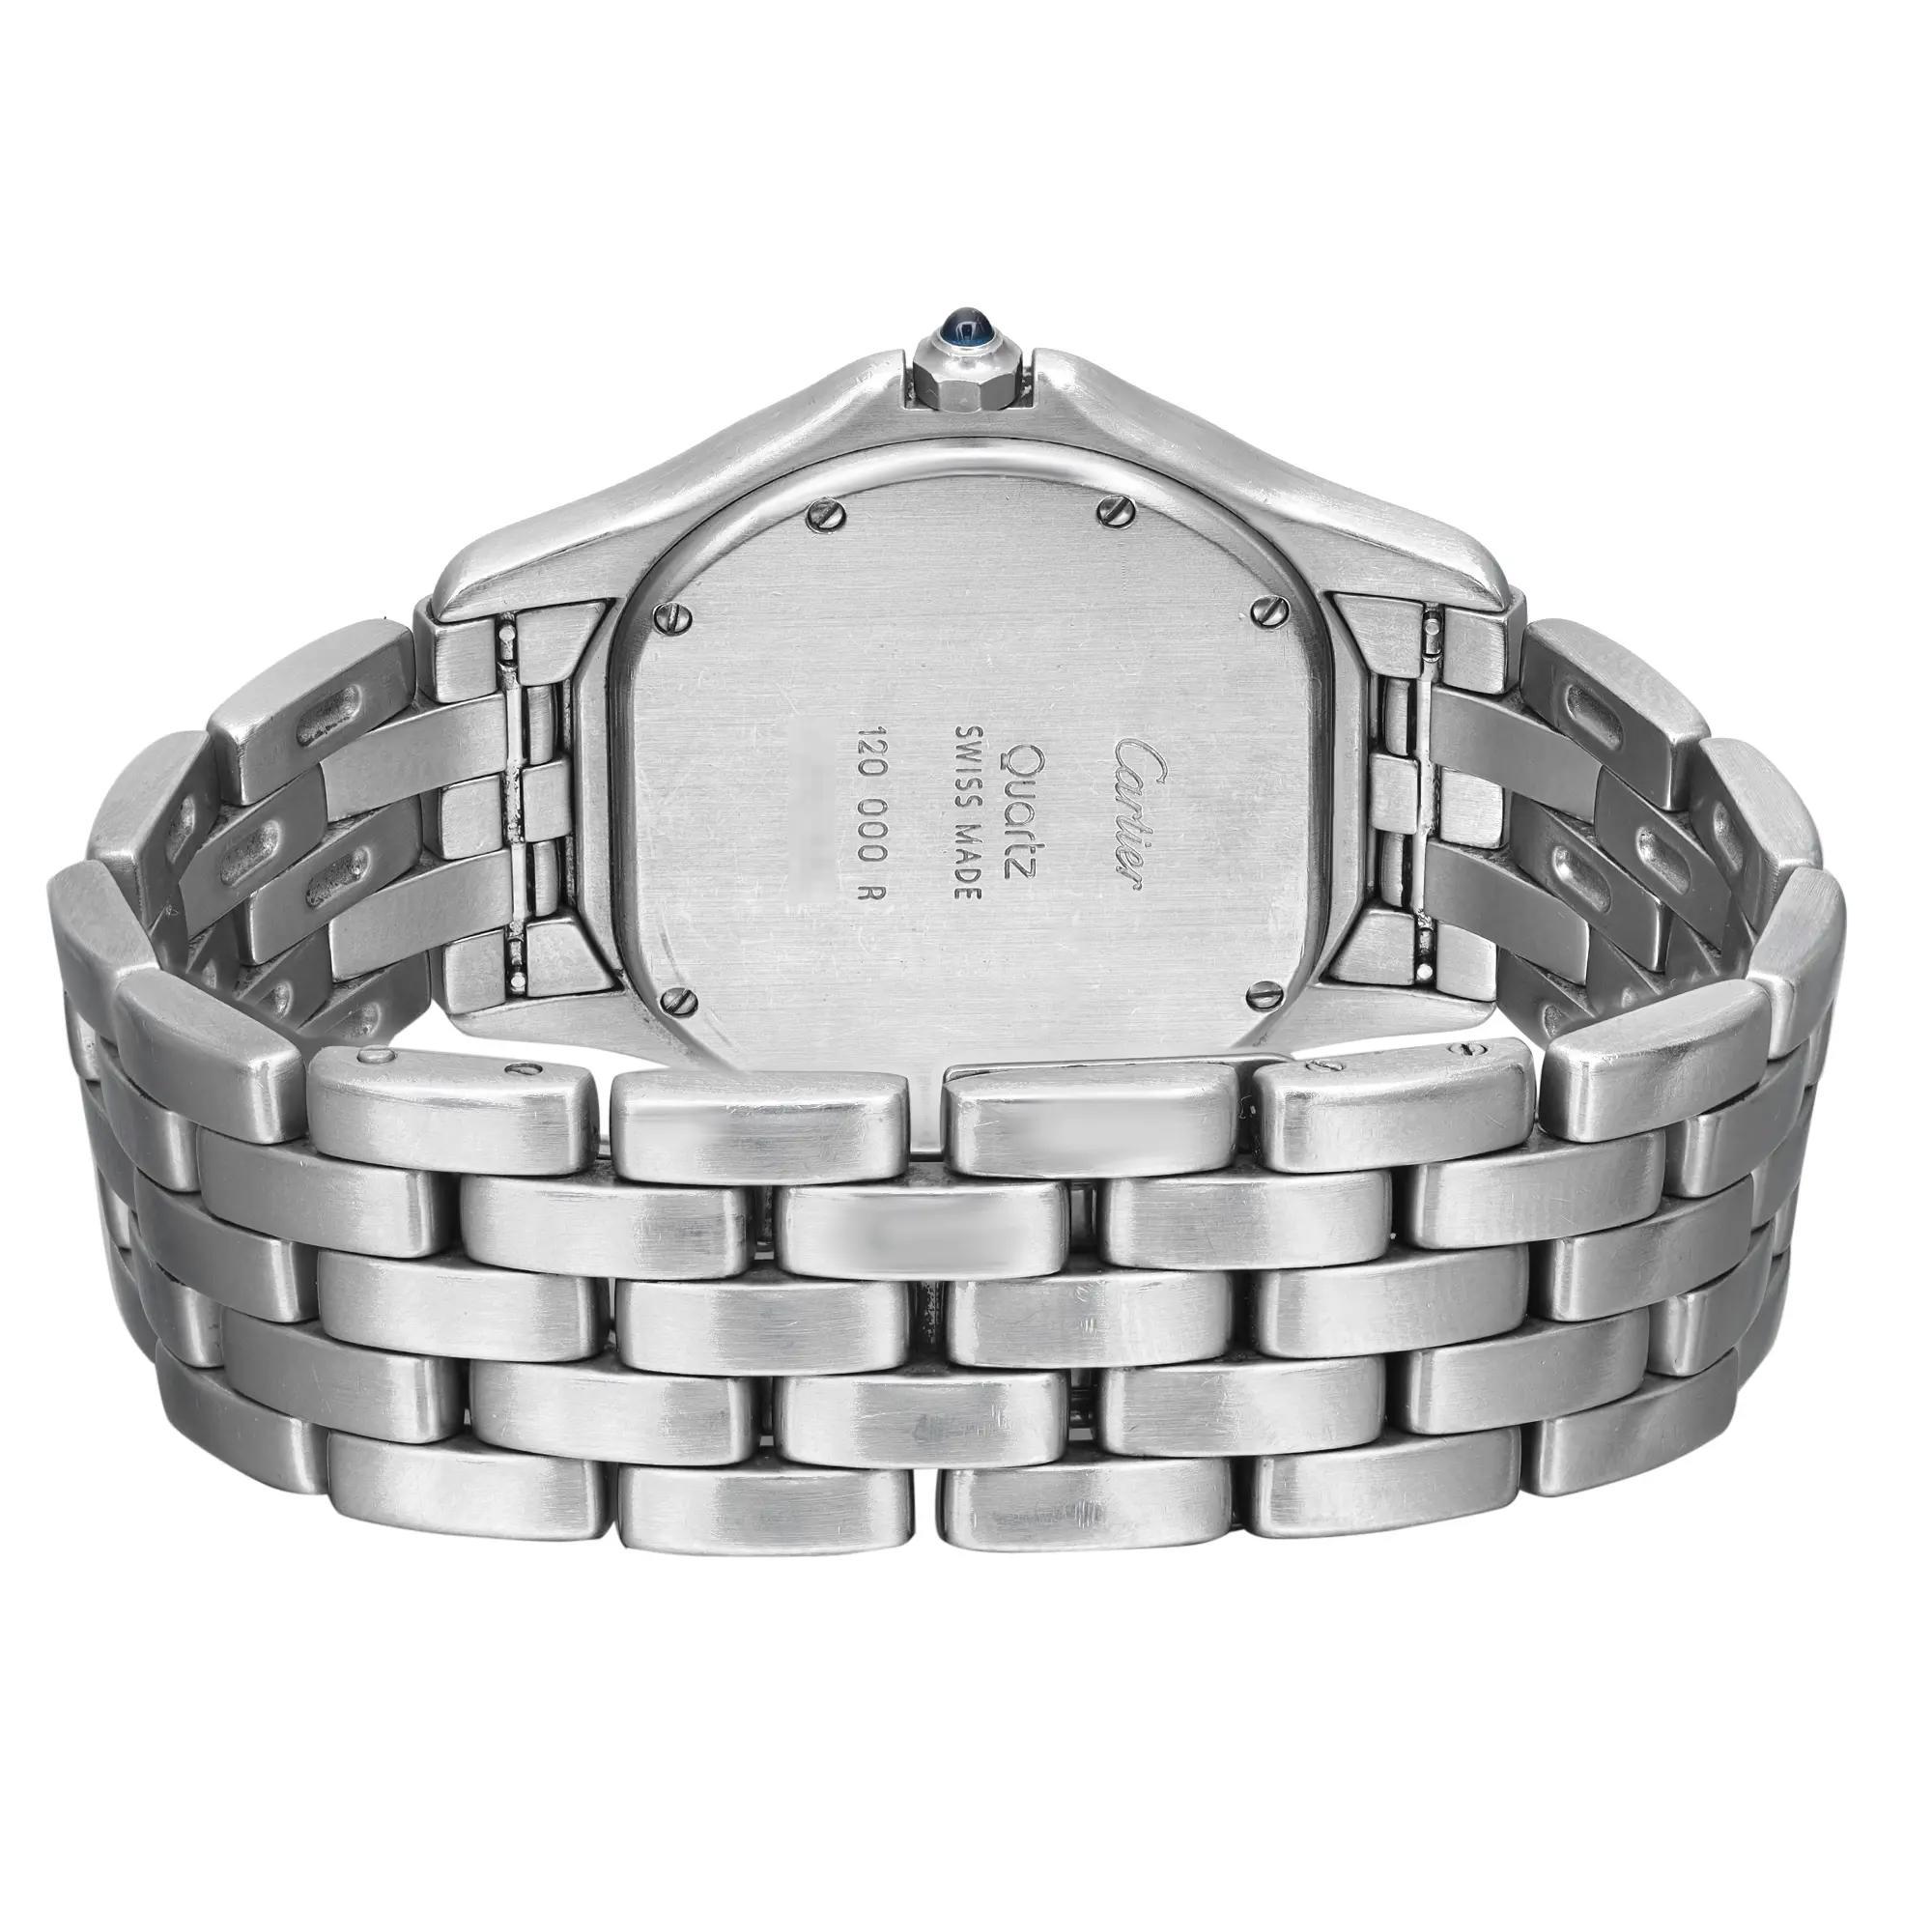 Cartier Cougar 33mm Stahl-Silber-Zifferblatt Quarz Unisex-Uhr W35002F5 1